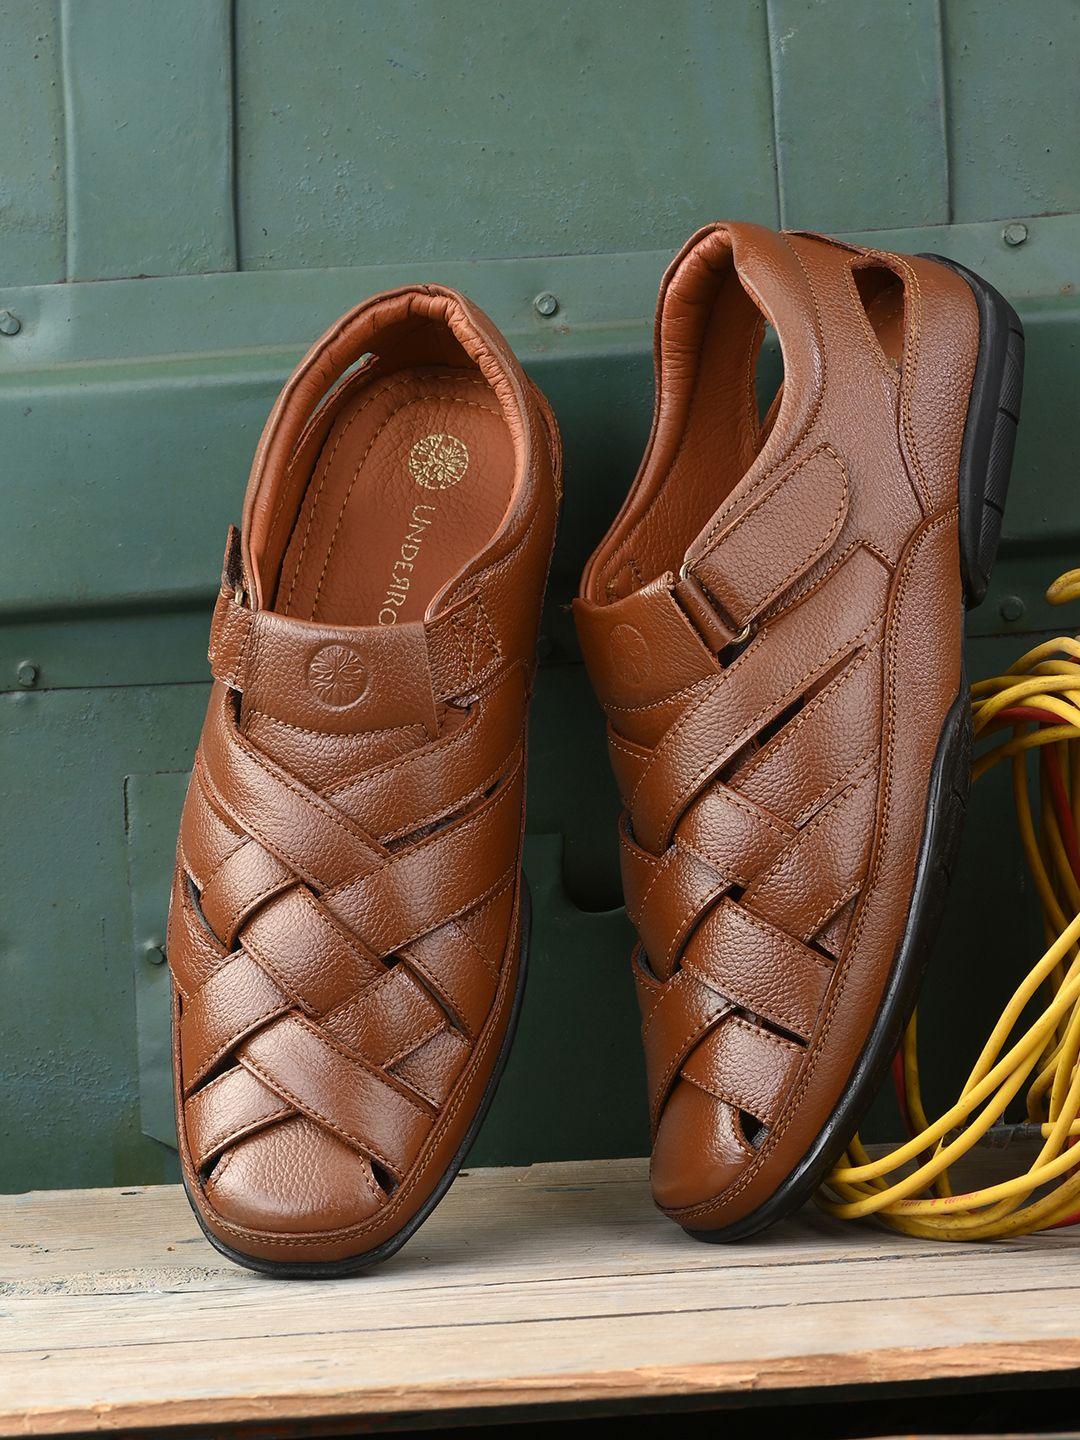 UNDERROUTE Men Tan Solid Leather Shoe-Style Sandals